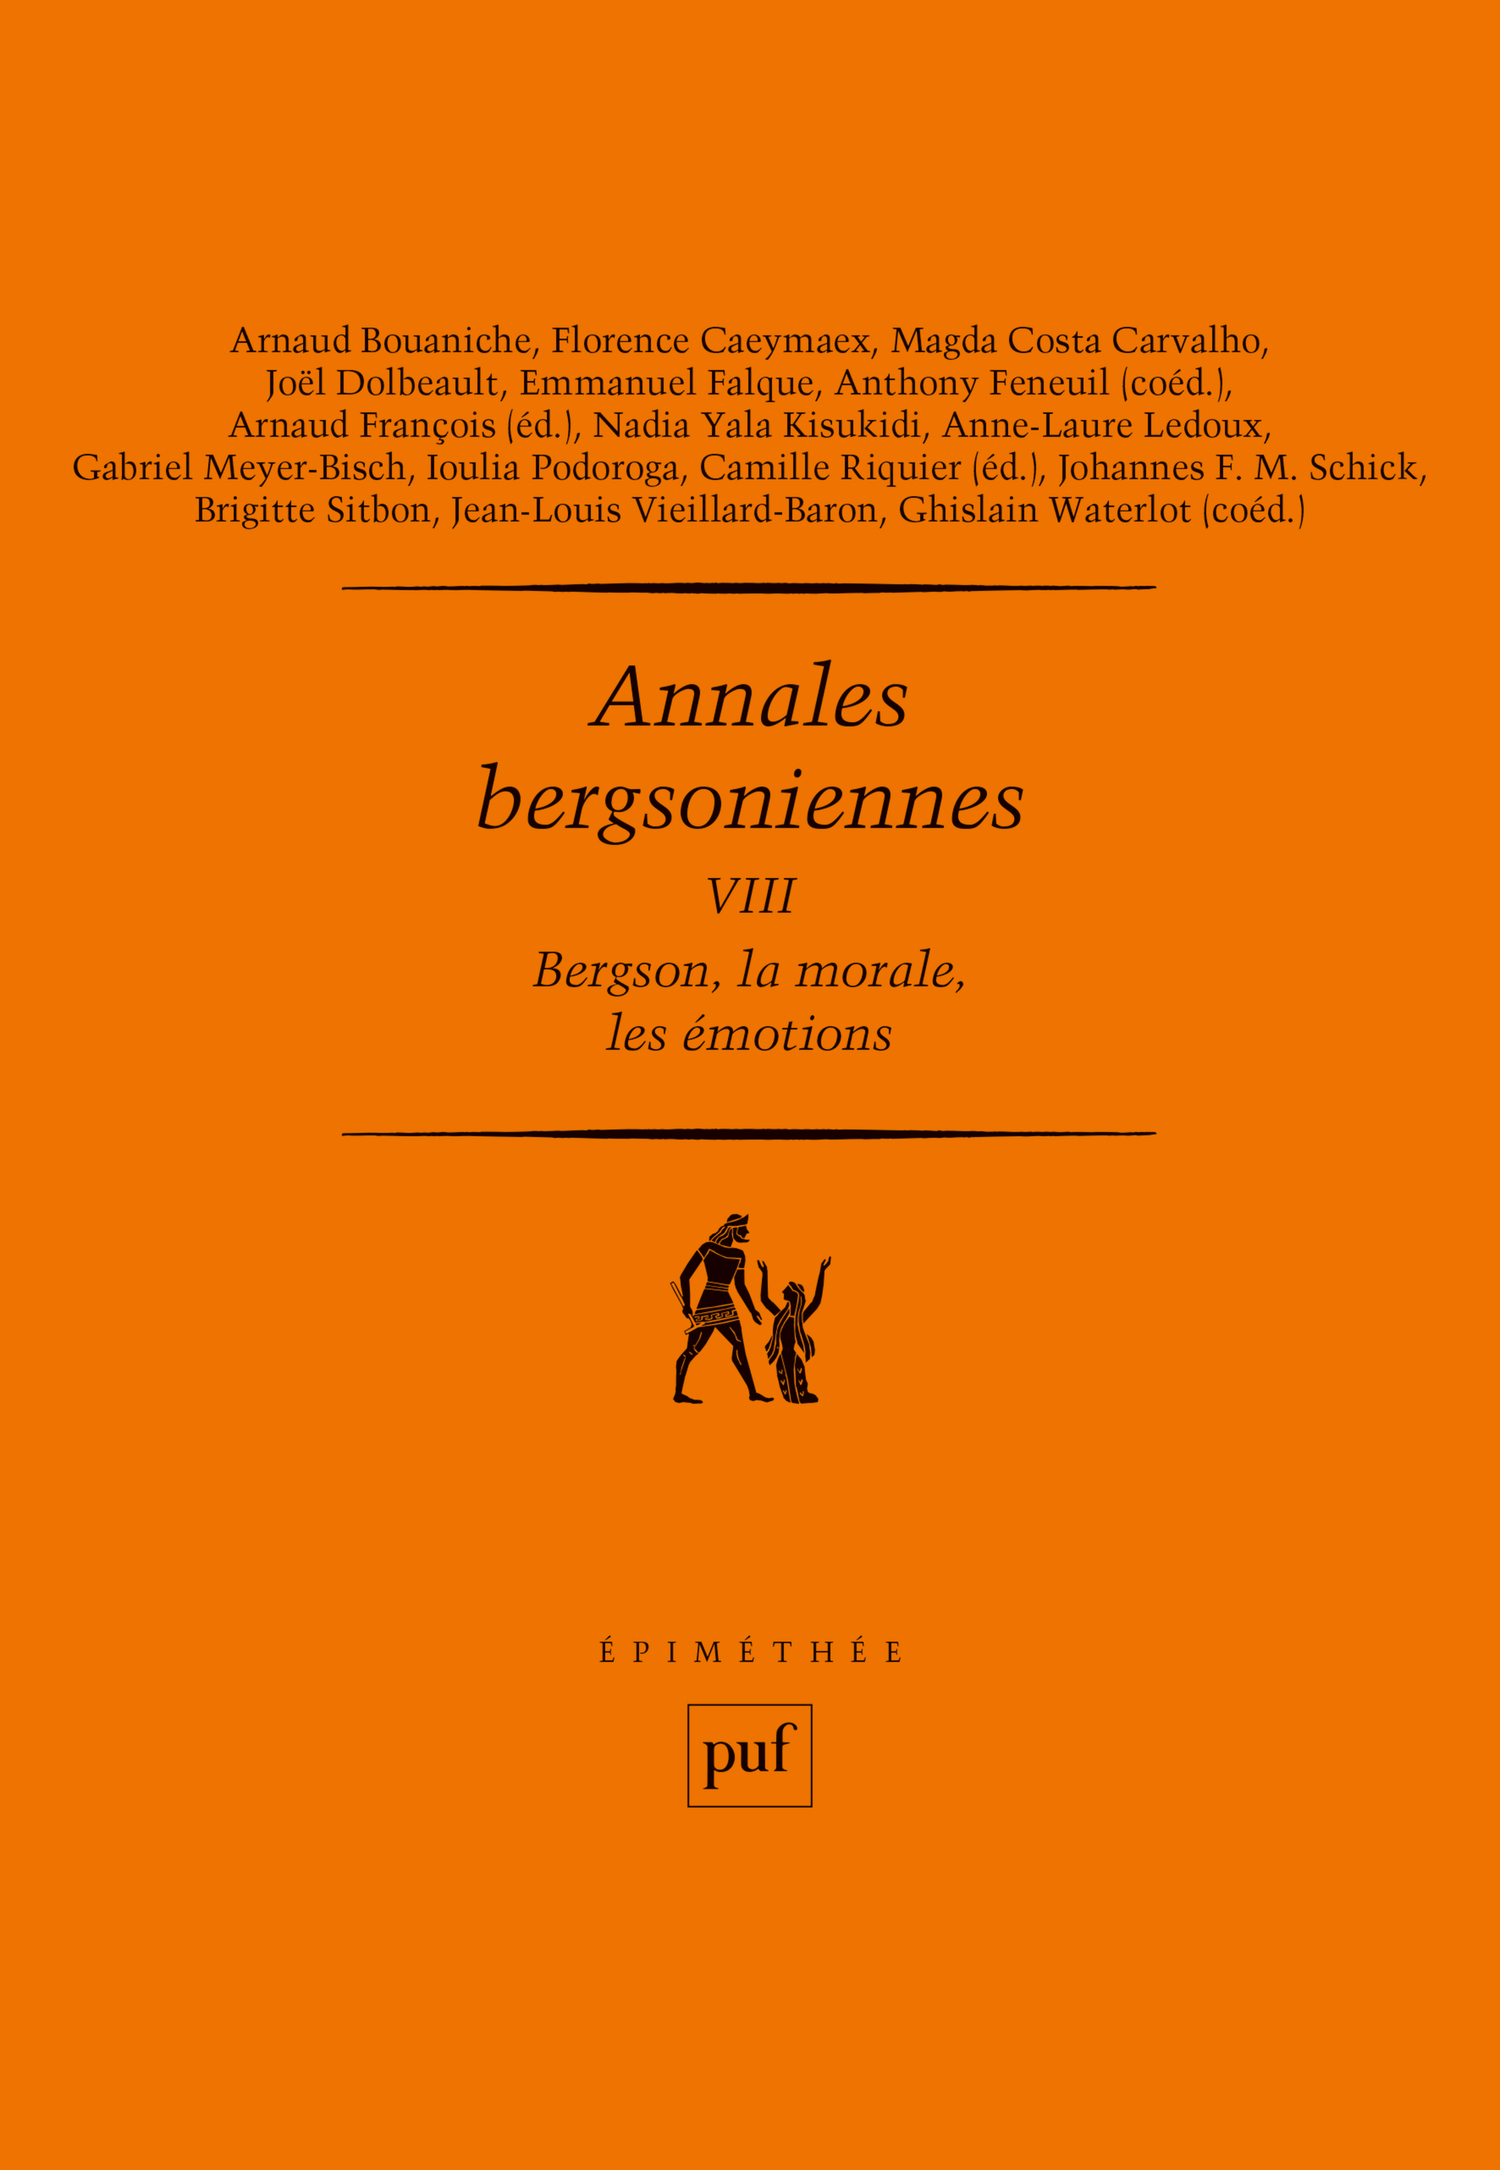 Annales bergsoniennes, VIII De Arnaud François et Camille Riquier - Presses Universitaires de France